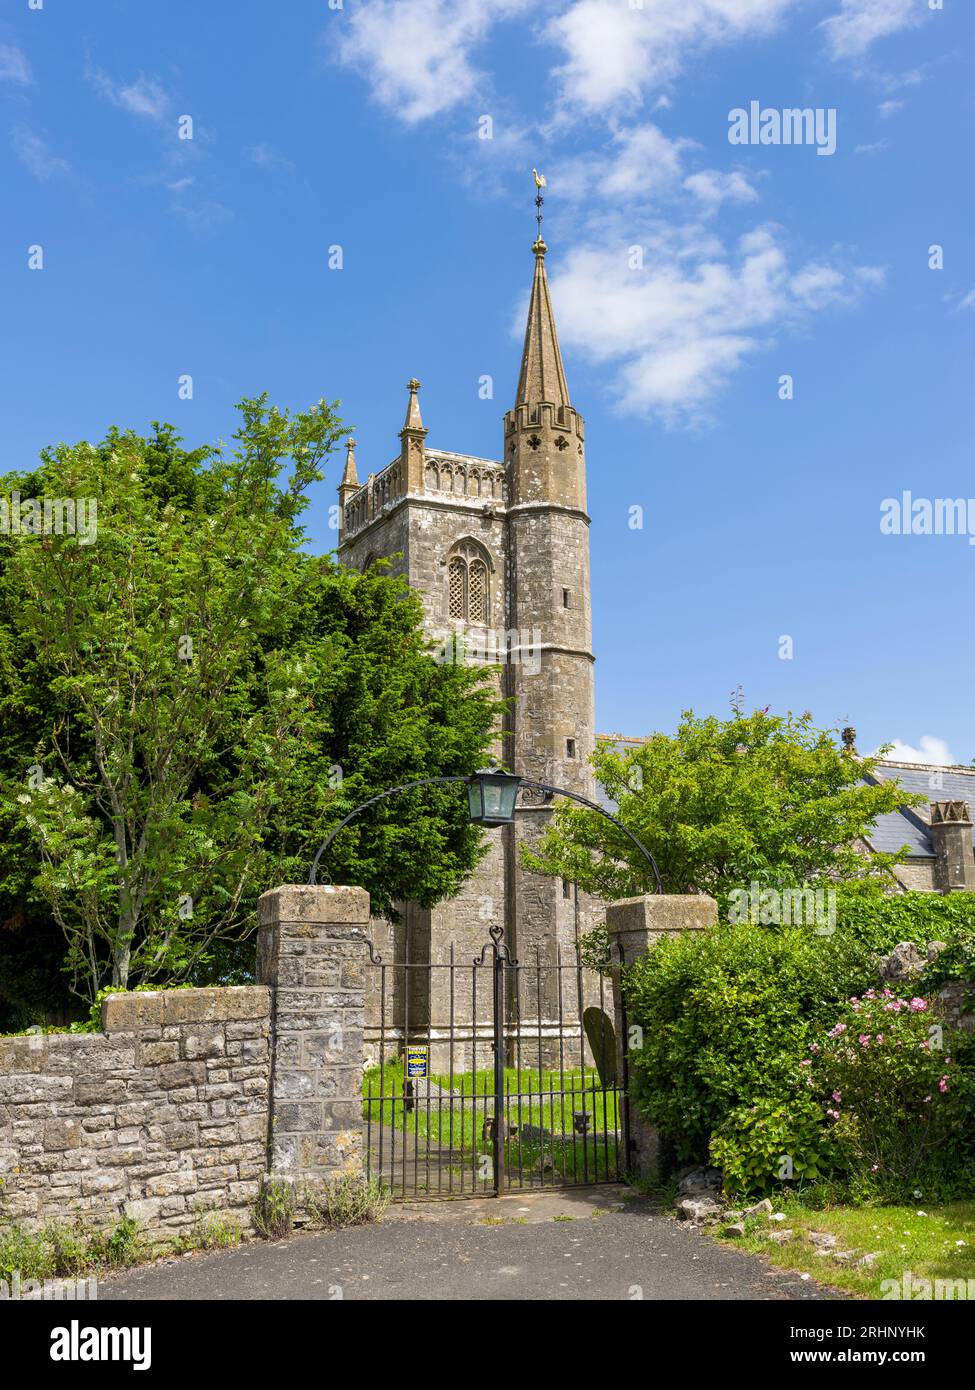 L'église St Mary dans le village de Nempnett Thrubwell, Somerset, Angleterre. Banque D'Images